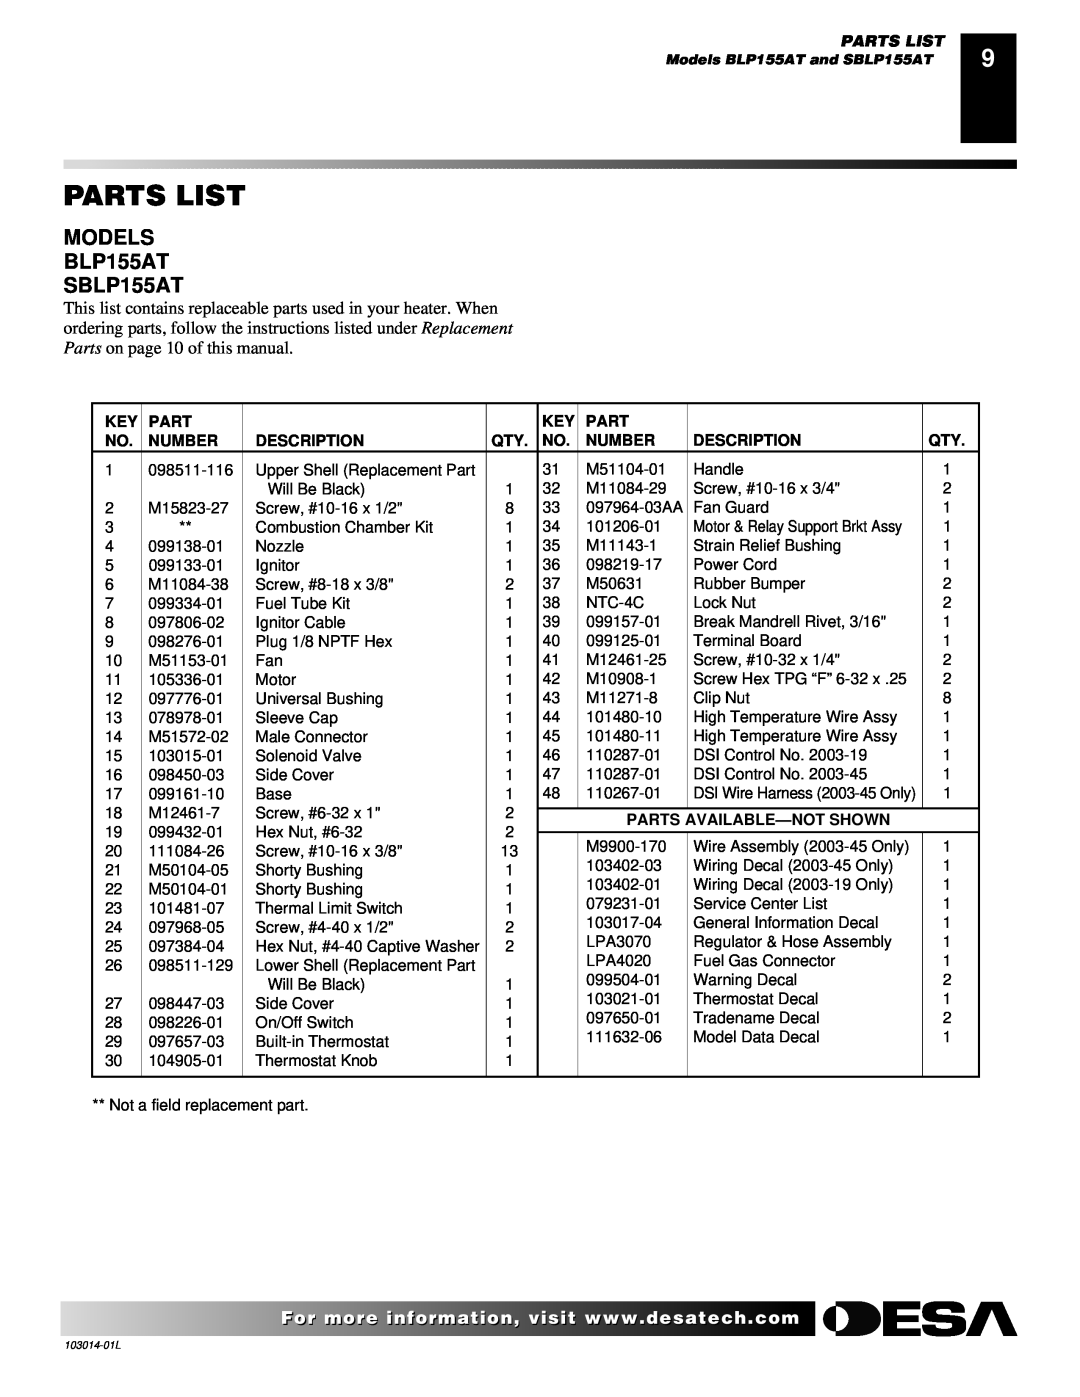 Desa SBLP155AT owner manual Parts List, Number, Description, Parts Available-Notshown 